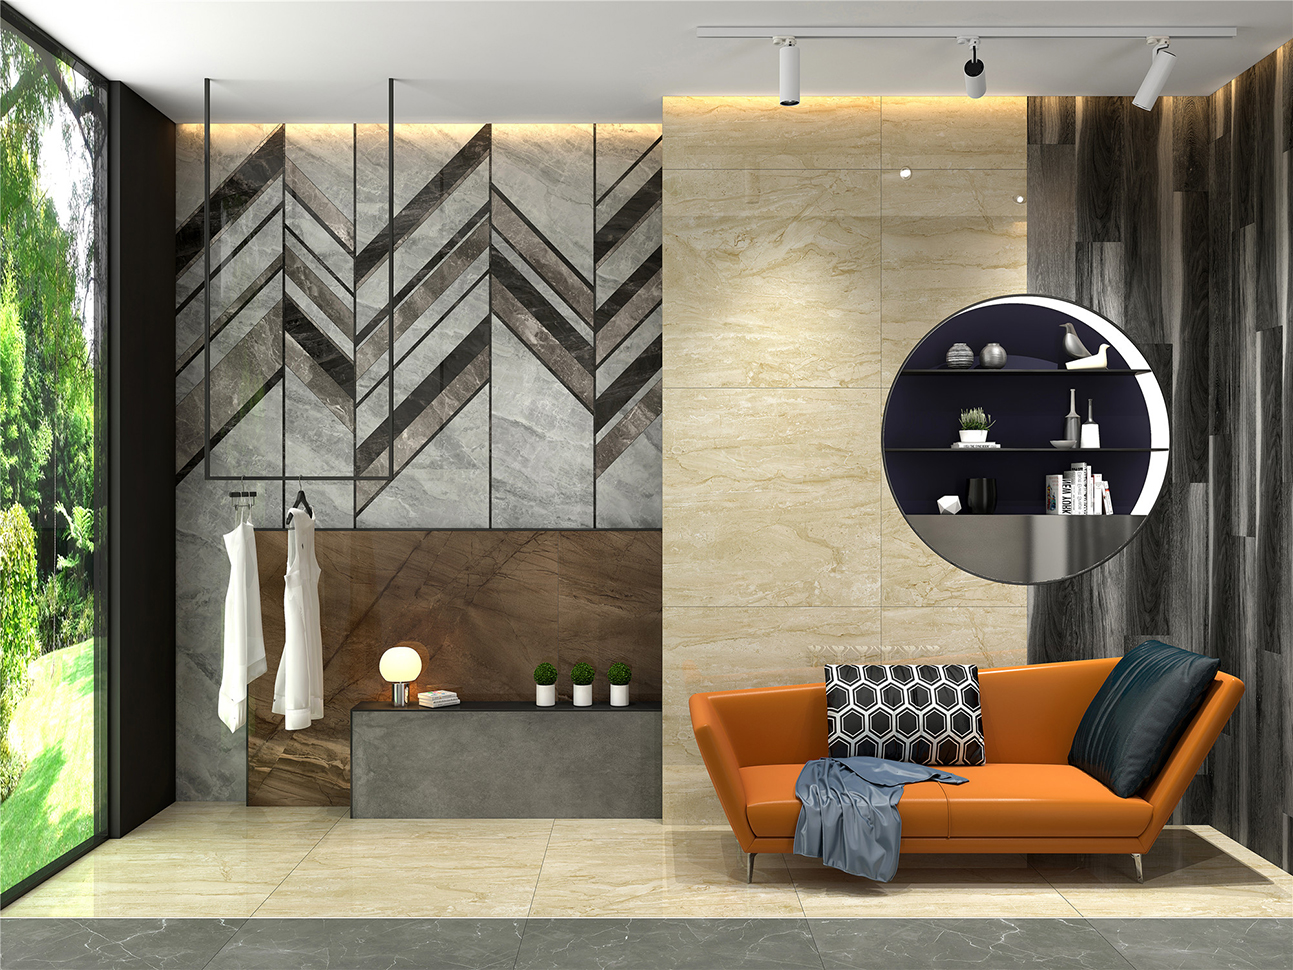 大理石瓷砖安塔娜米黄IPGS90071客餐厅空间效果图